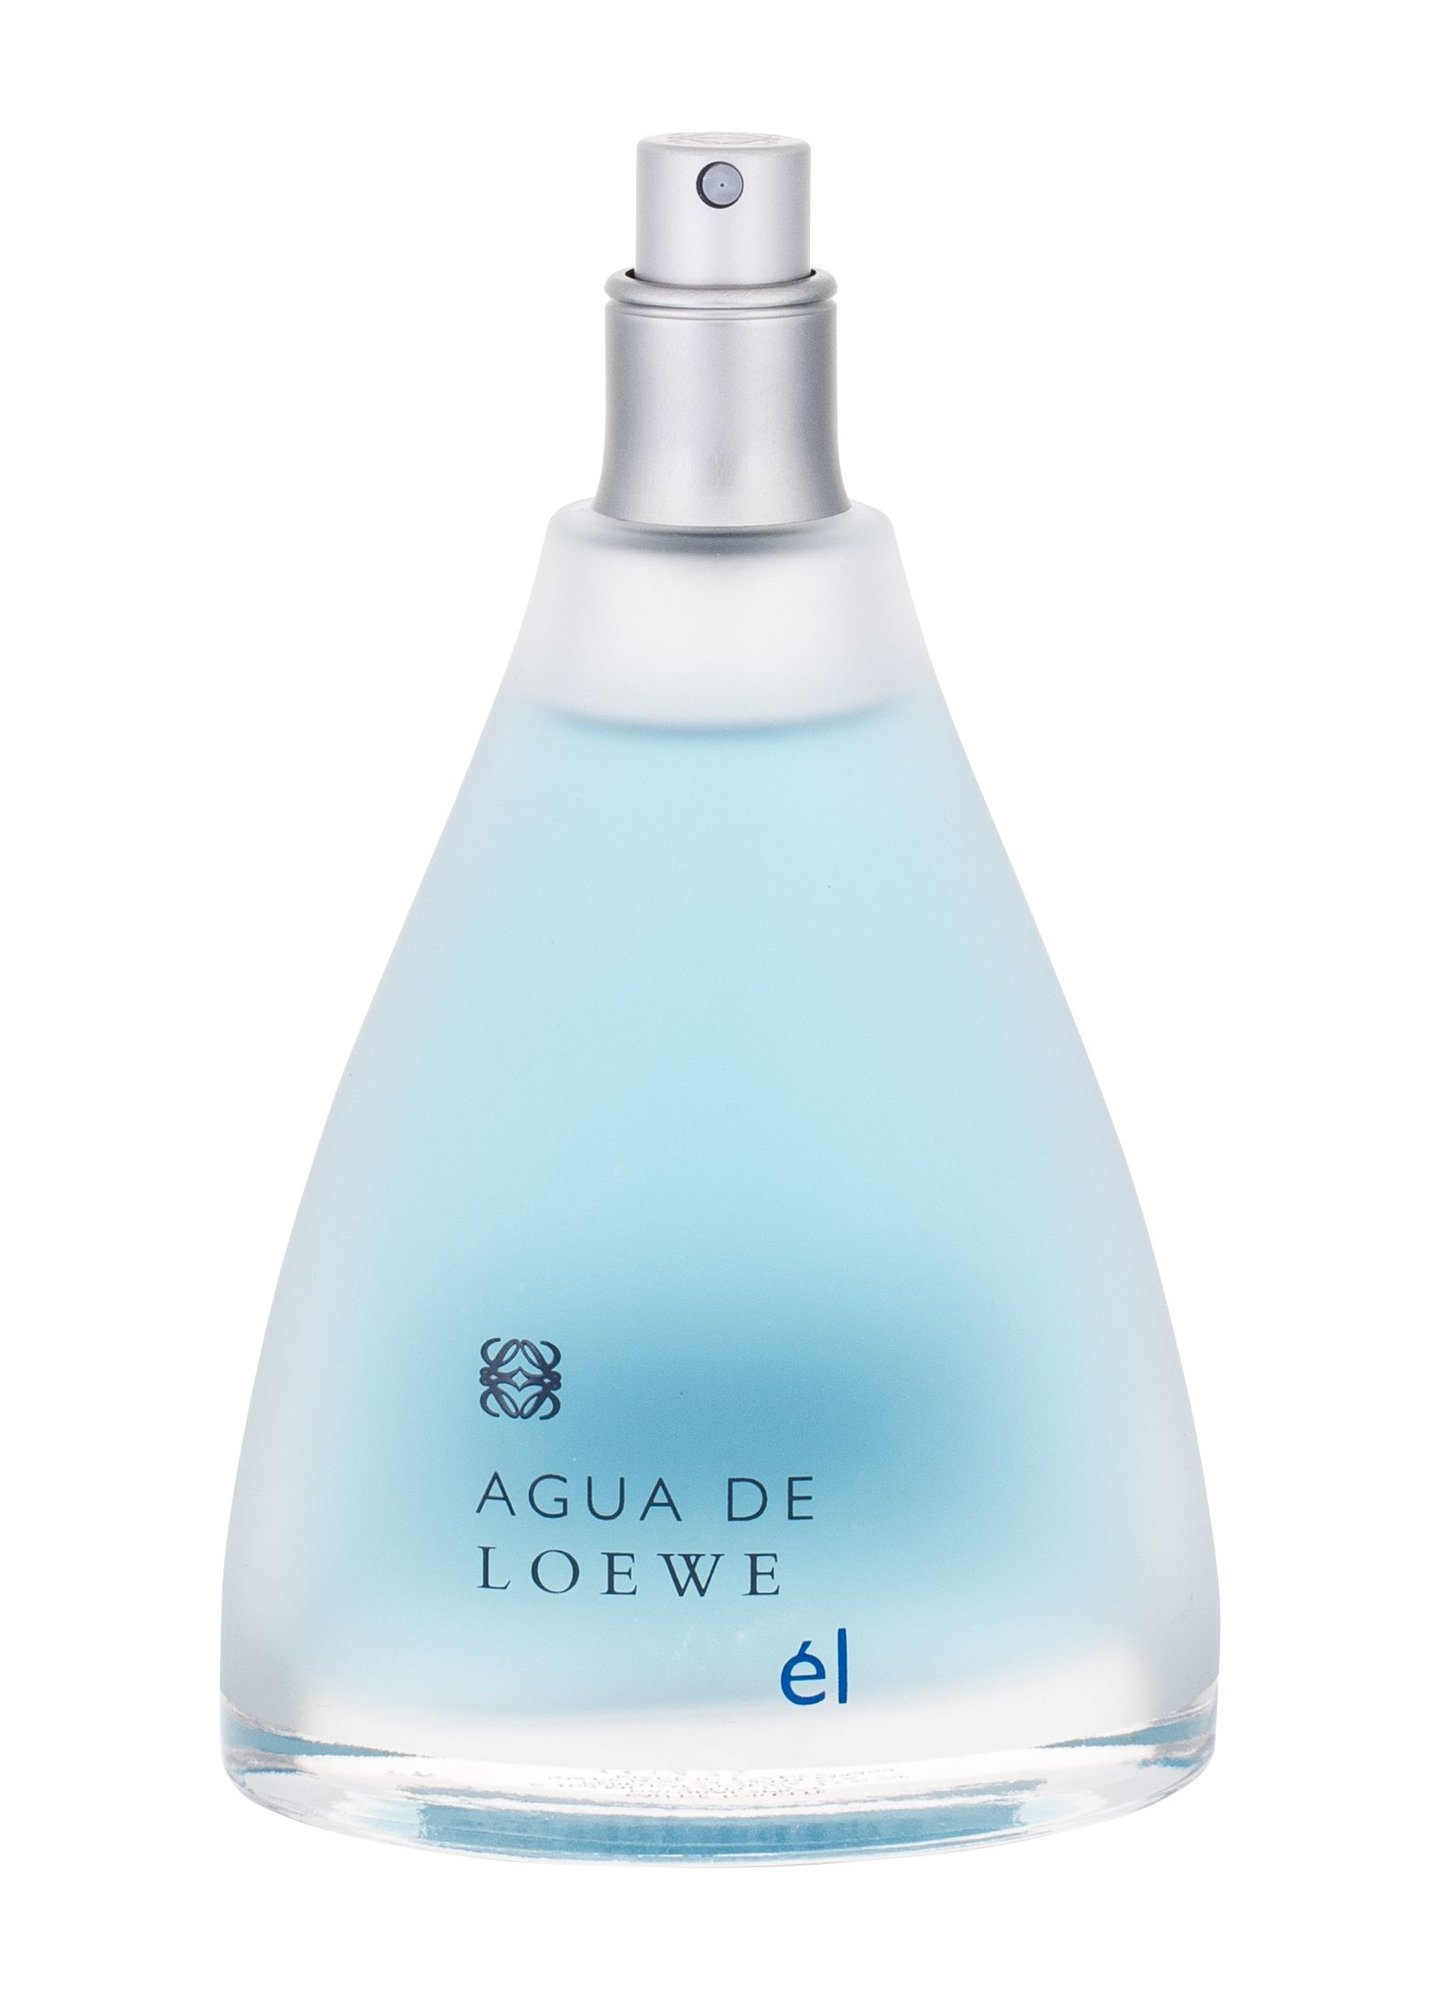 Loewe Agua de Loewe El